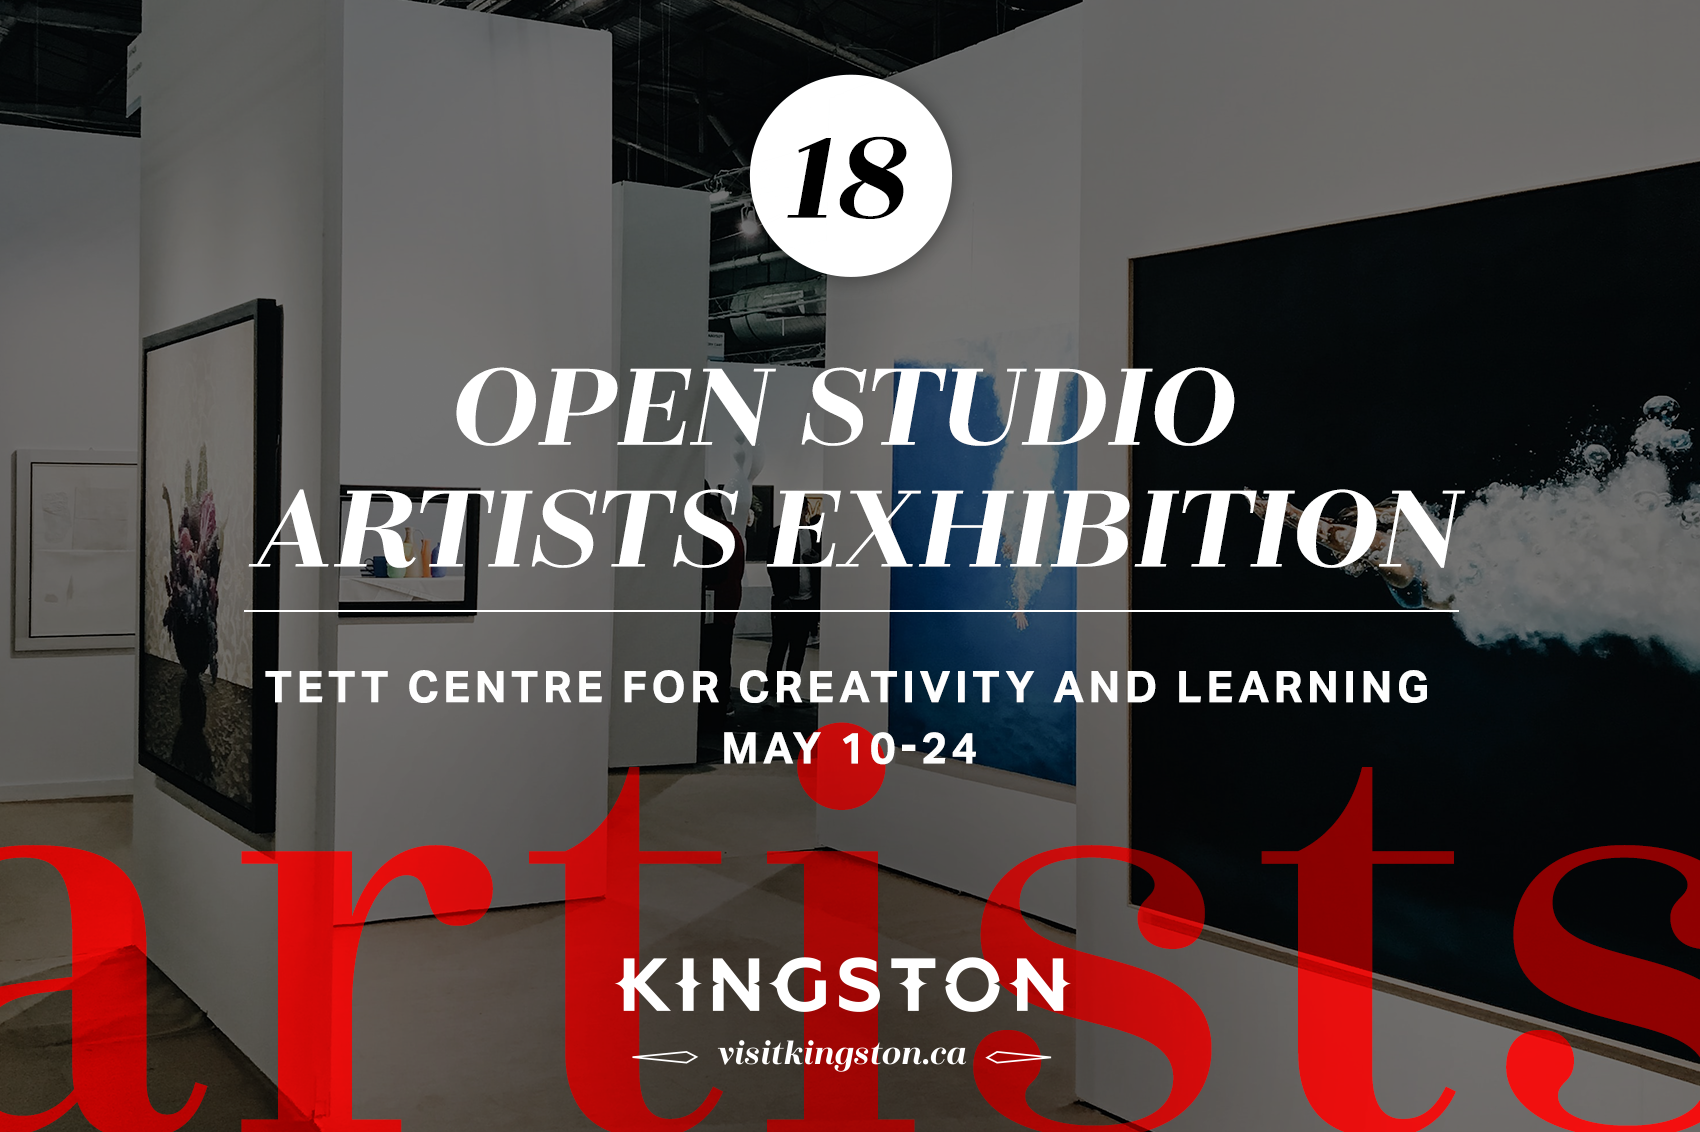 Open Studio Artists Exhibition